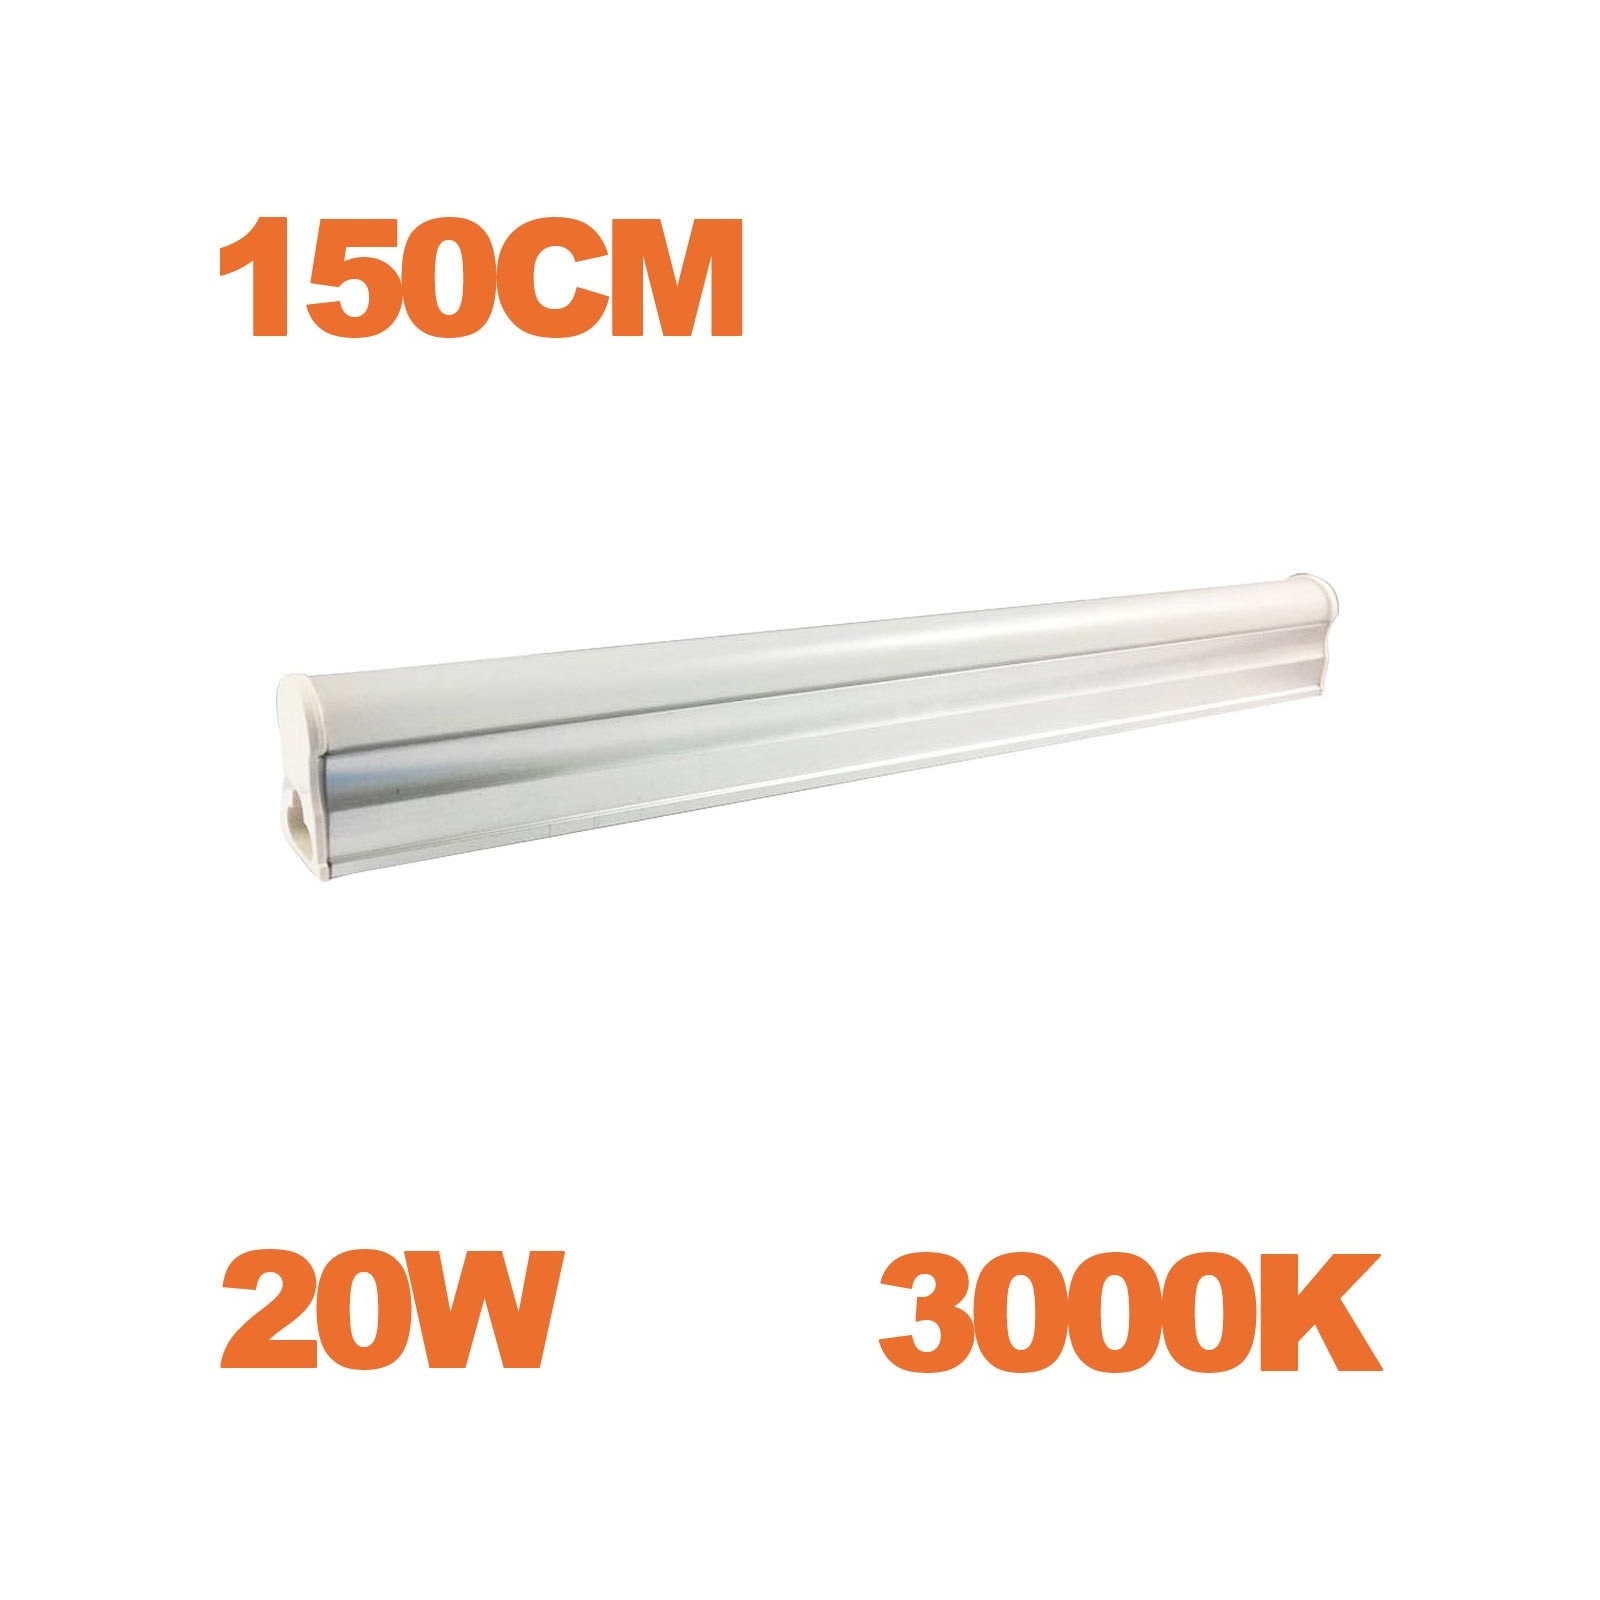 Tube LED T5 Puissance 20W Longueur 150cm Blanc Chaud 2700K